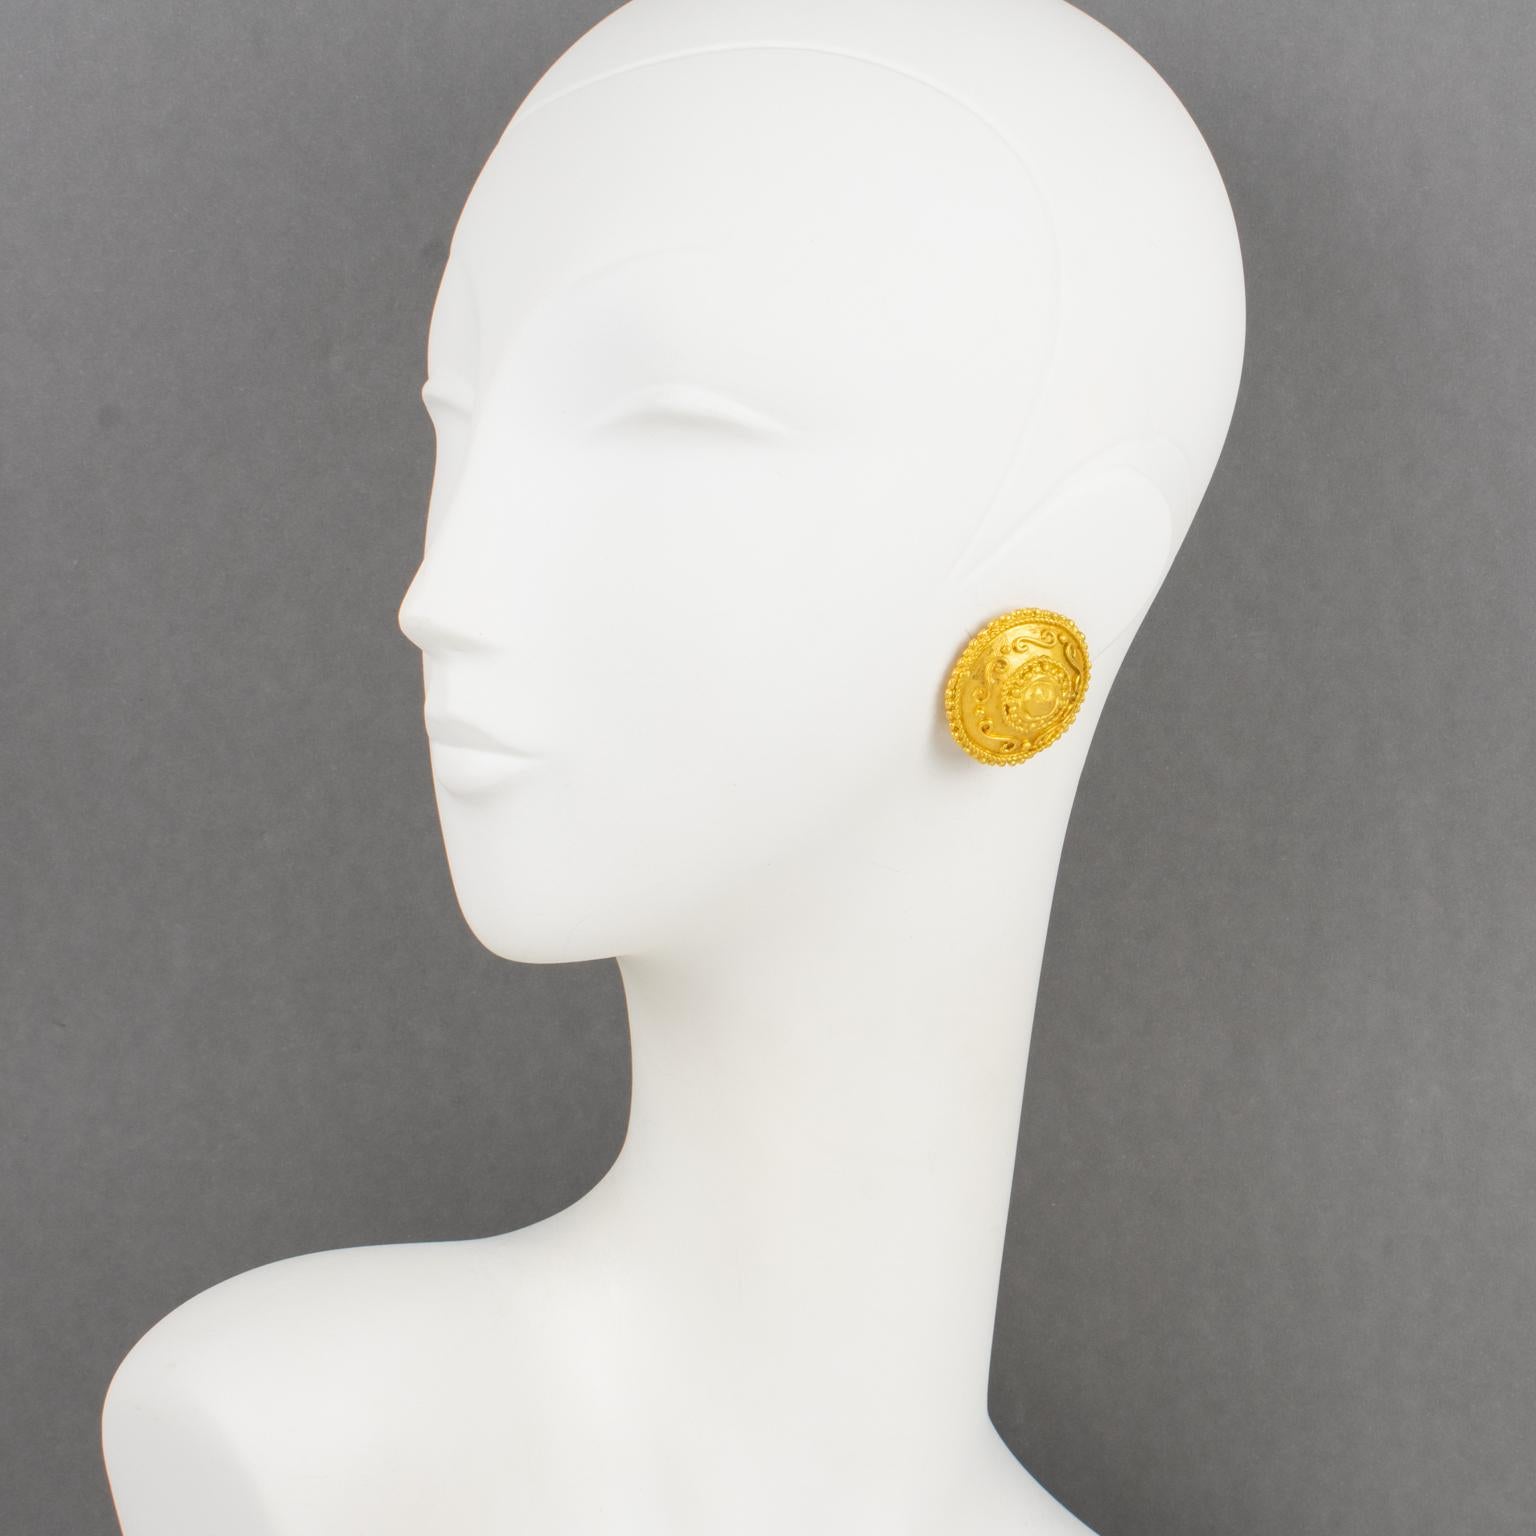 Diese stilvollen Emanuel Ungaro Paris Couture-Ohrringe sind aus vergoldetem Metall und haben eine runde Form mit geometrischem Muster und satinierter Oberfläche. Jedes Stück ist auf der Unterseite mit einem Schild signiert, auf dem Ungaro - Paris -